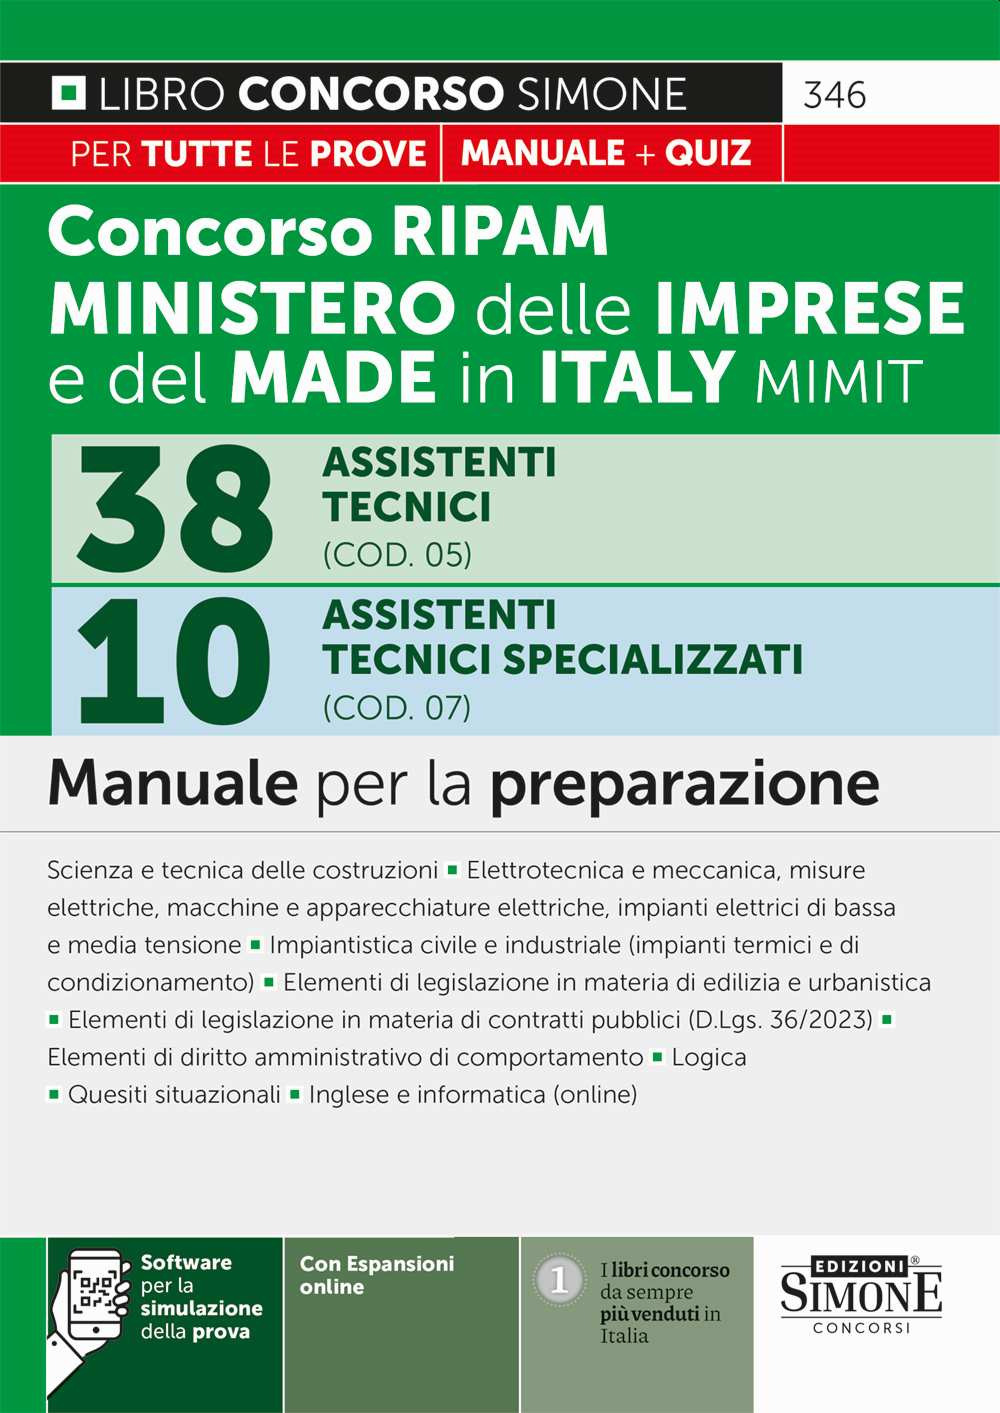 Concorso RIPAM 338 posti ministero delle imprese e del made in Italy MIMIT. 38 assistenti tecnici (COD. 05). 10 Assistenti tecnici specializzati (COD. 07). Manuale per la preparazione. Con Software di simulazione. Con espansione online